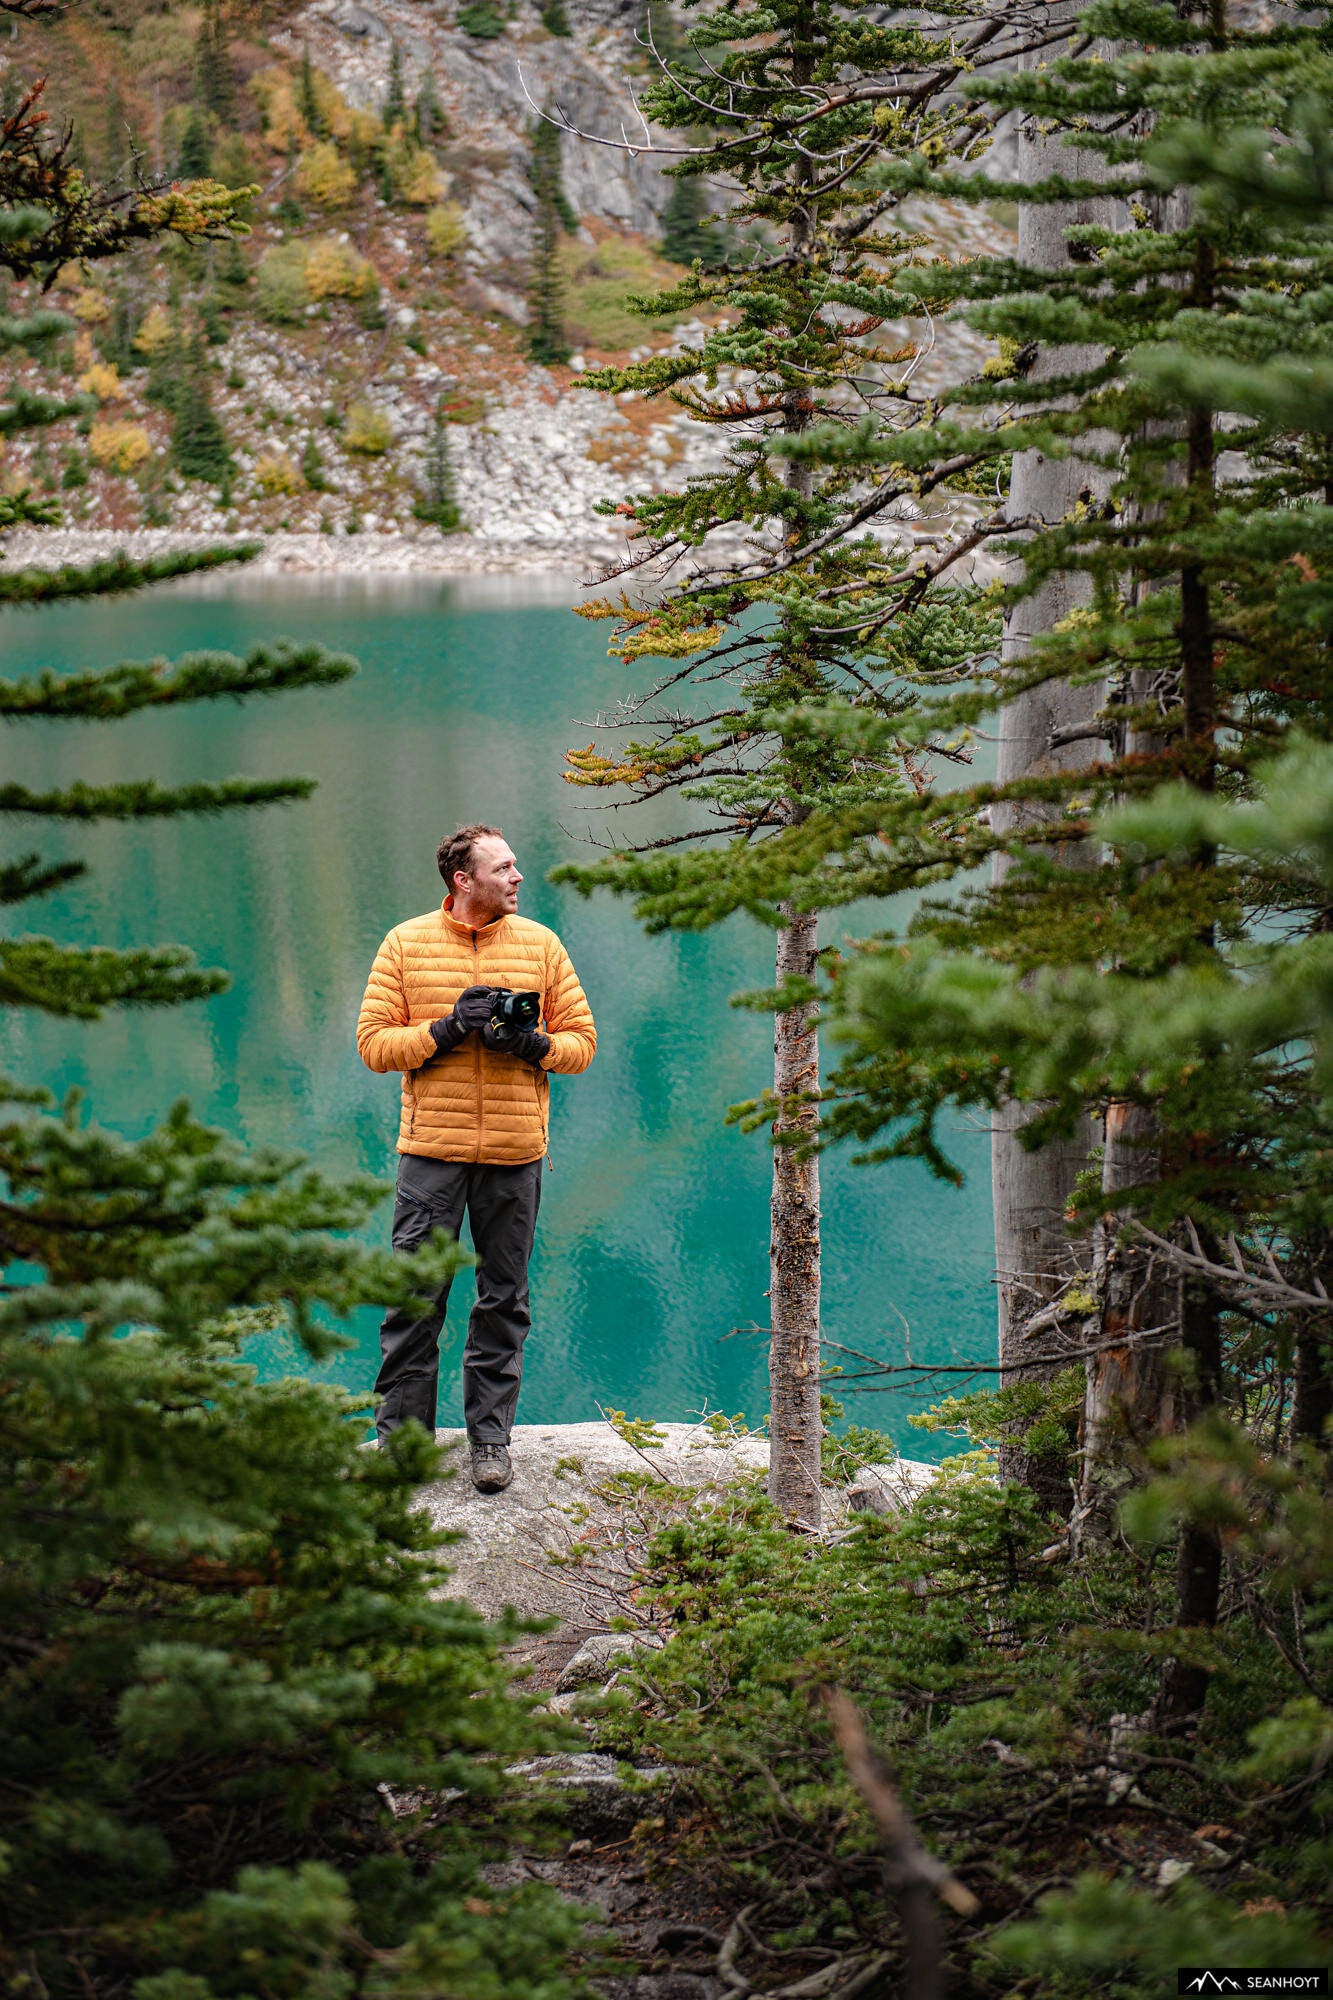 Sean Hoyt at a lake with camera